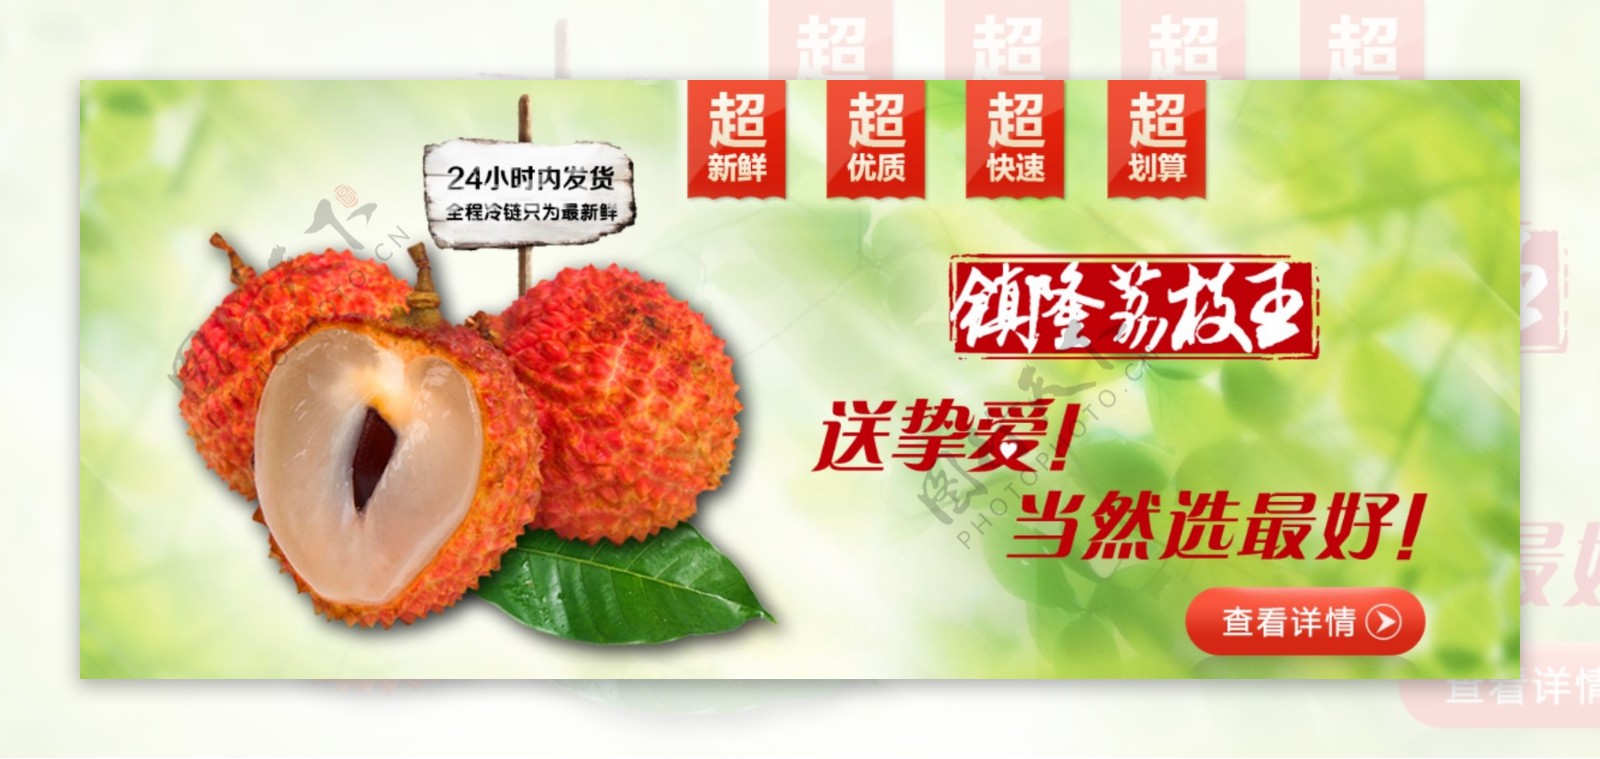 淘宝天猫首页水果食品荔枝专题设计海报